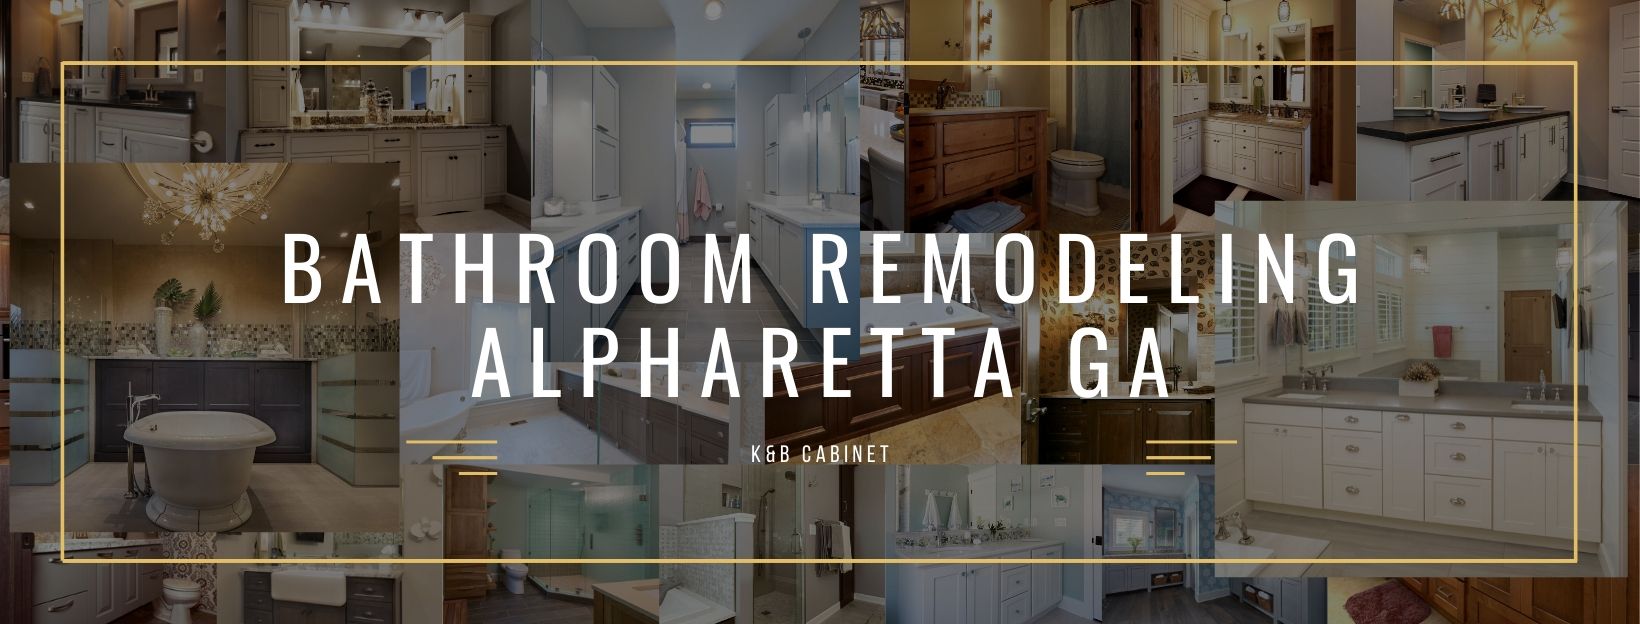 Bathroom Remodeling Alpharetta GA